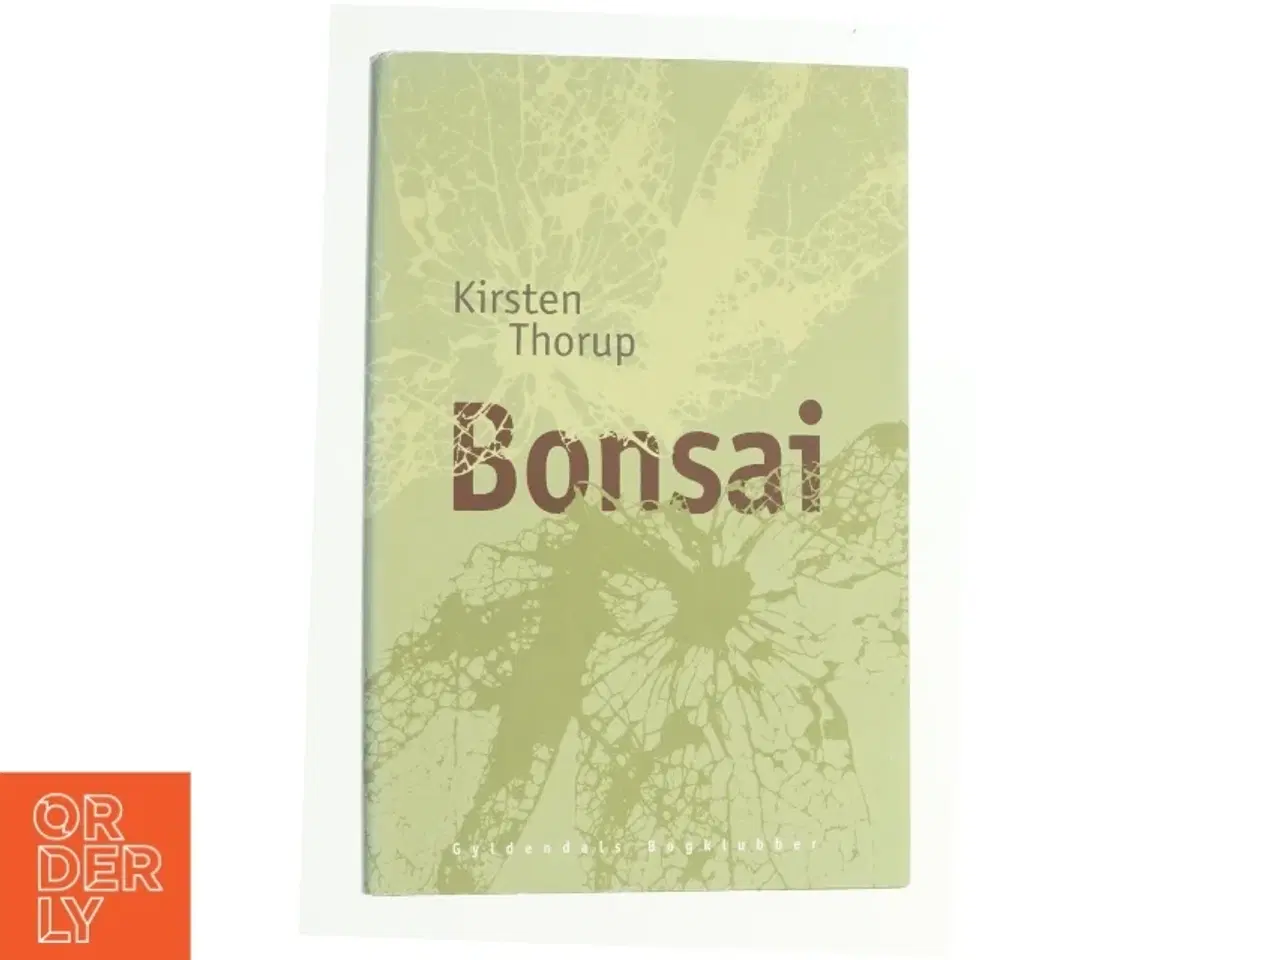 Billede 1 - Bonsai : roman af Kirsten Thorup (Bog)